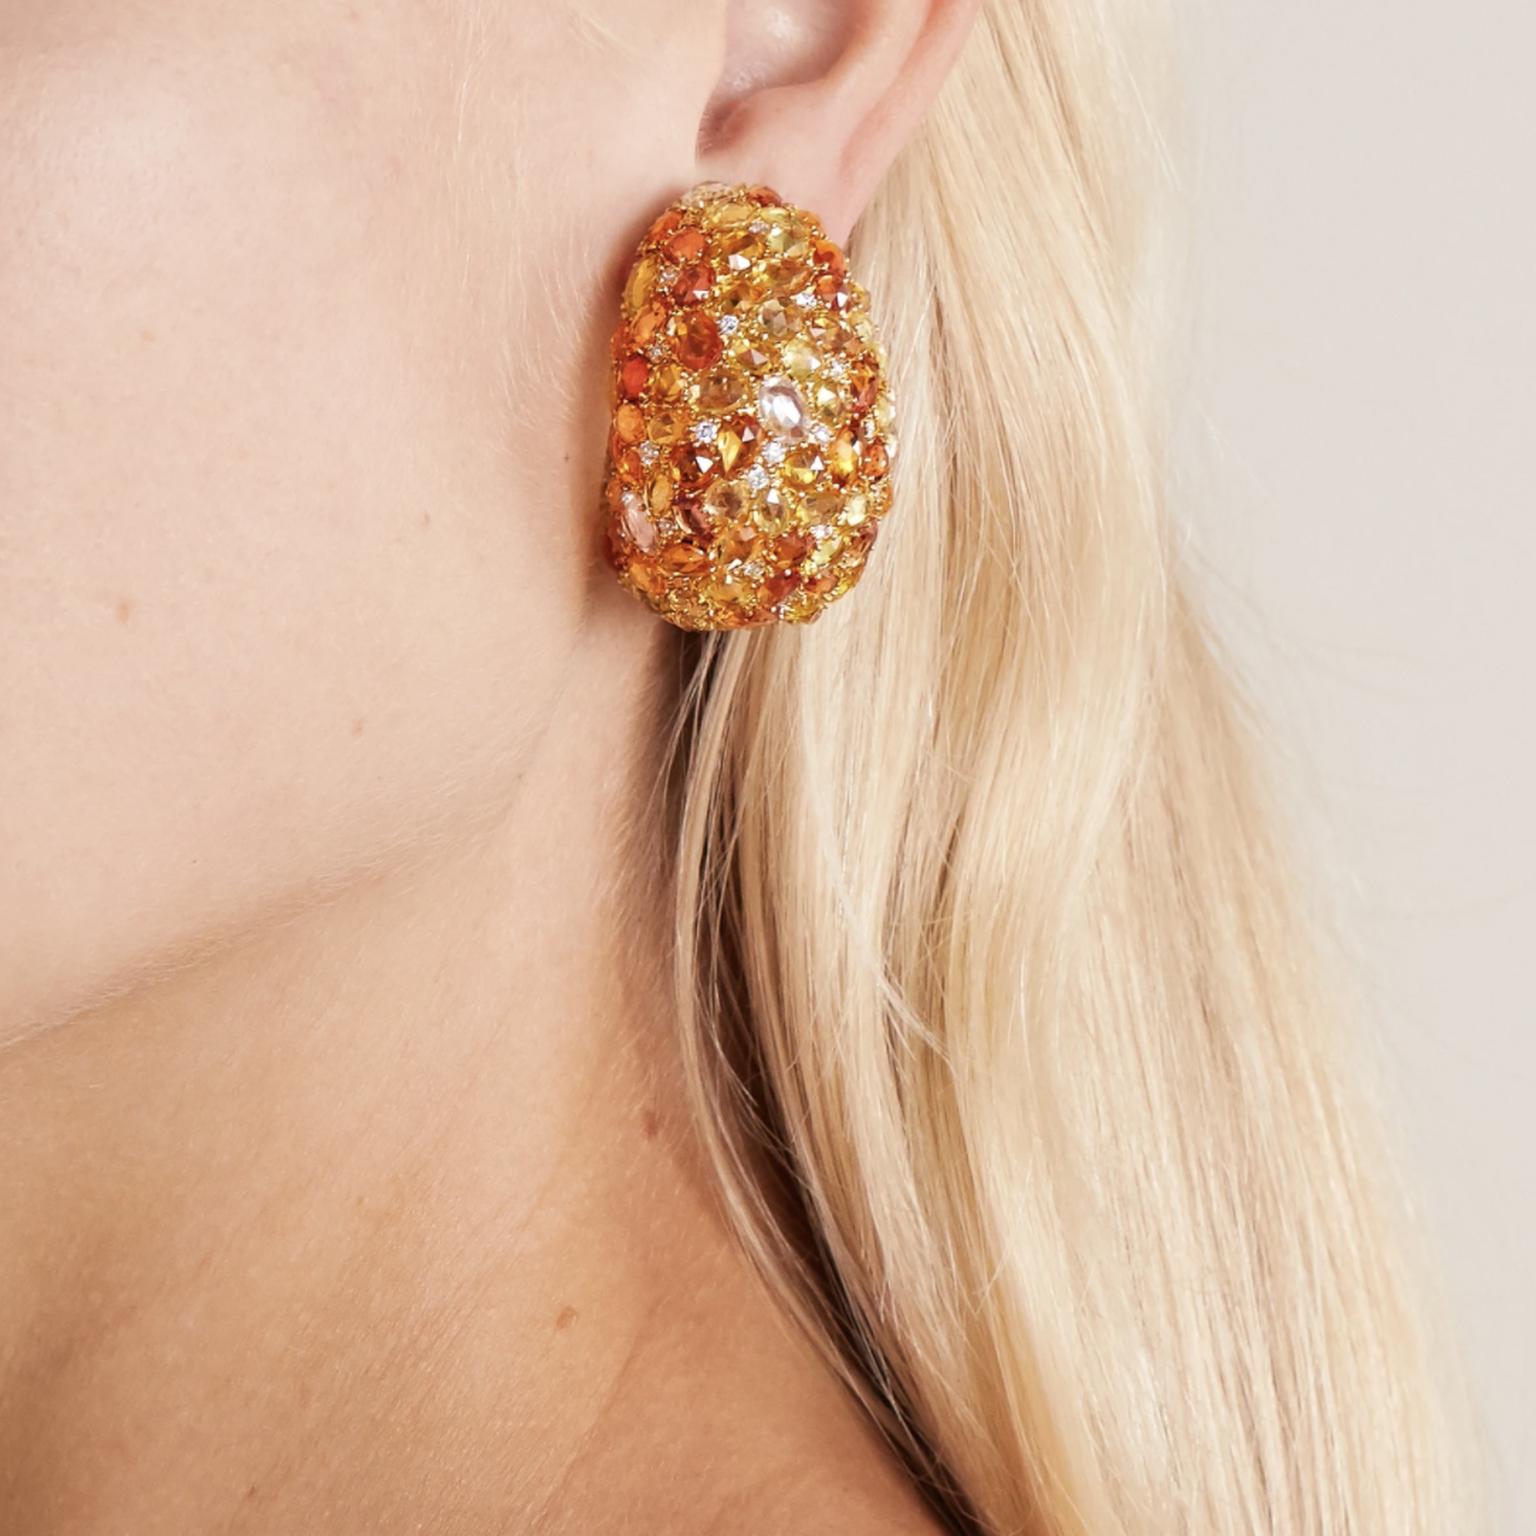 Sapphire and diamond earrings by Lorraine Schwartz on model